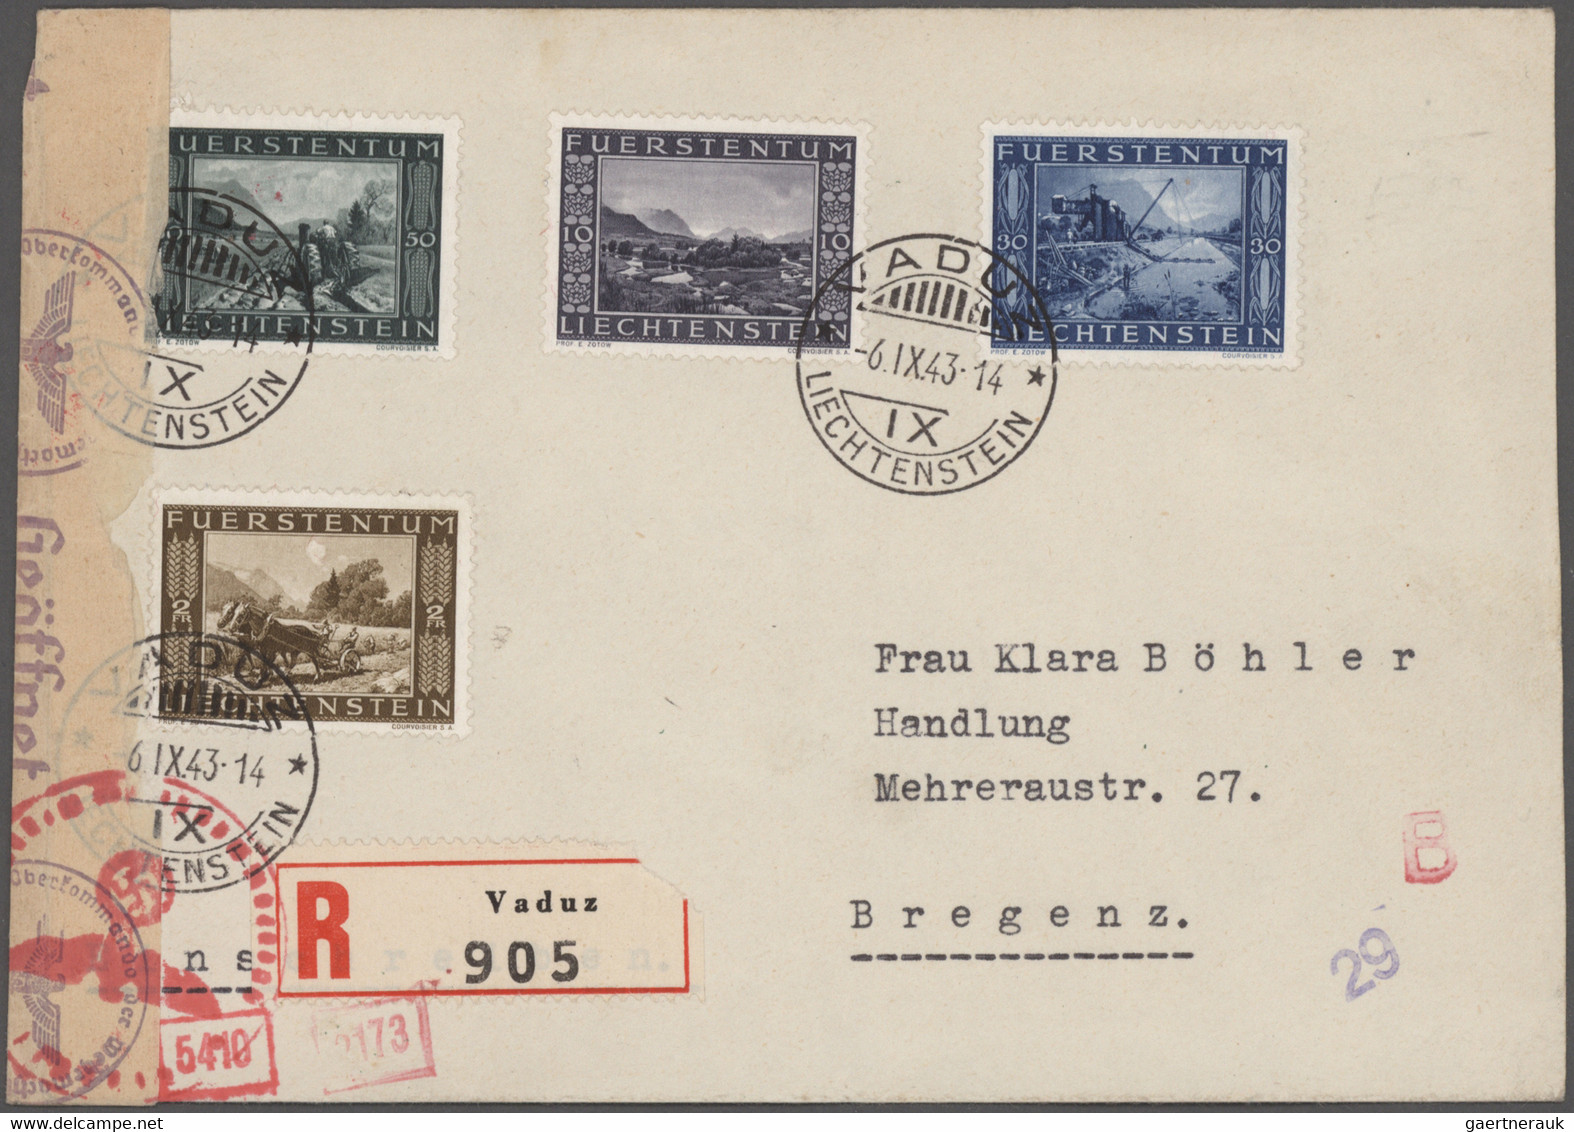 Liechtenstein: 1918/1980, sehr umfangreicher Posten mit Bedarfsbriefen, Sammlerbriefen, Ganzsachen g